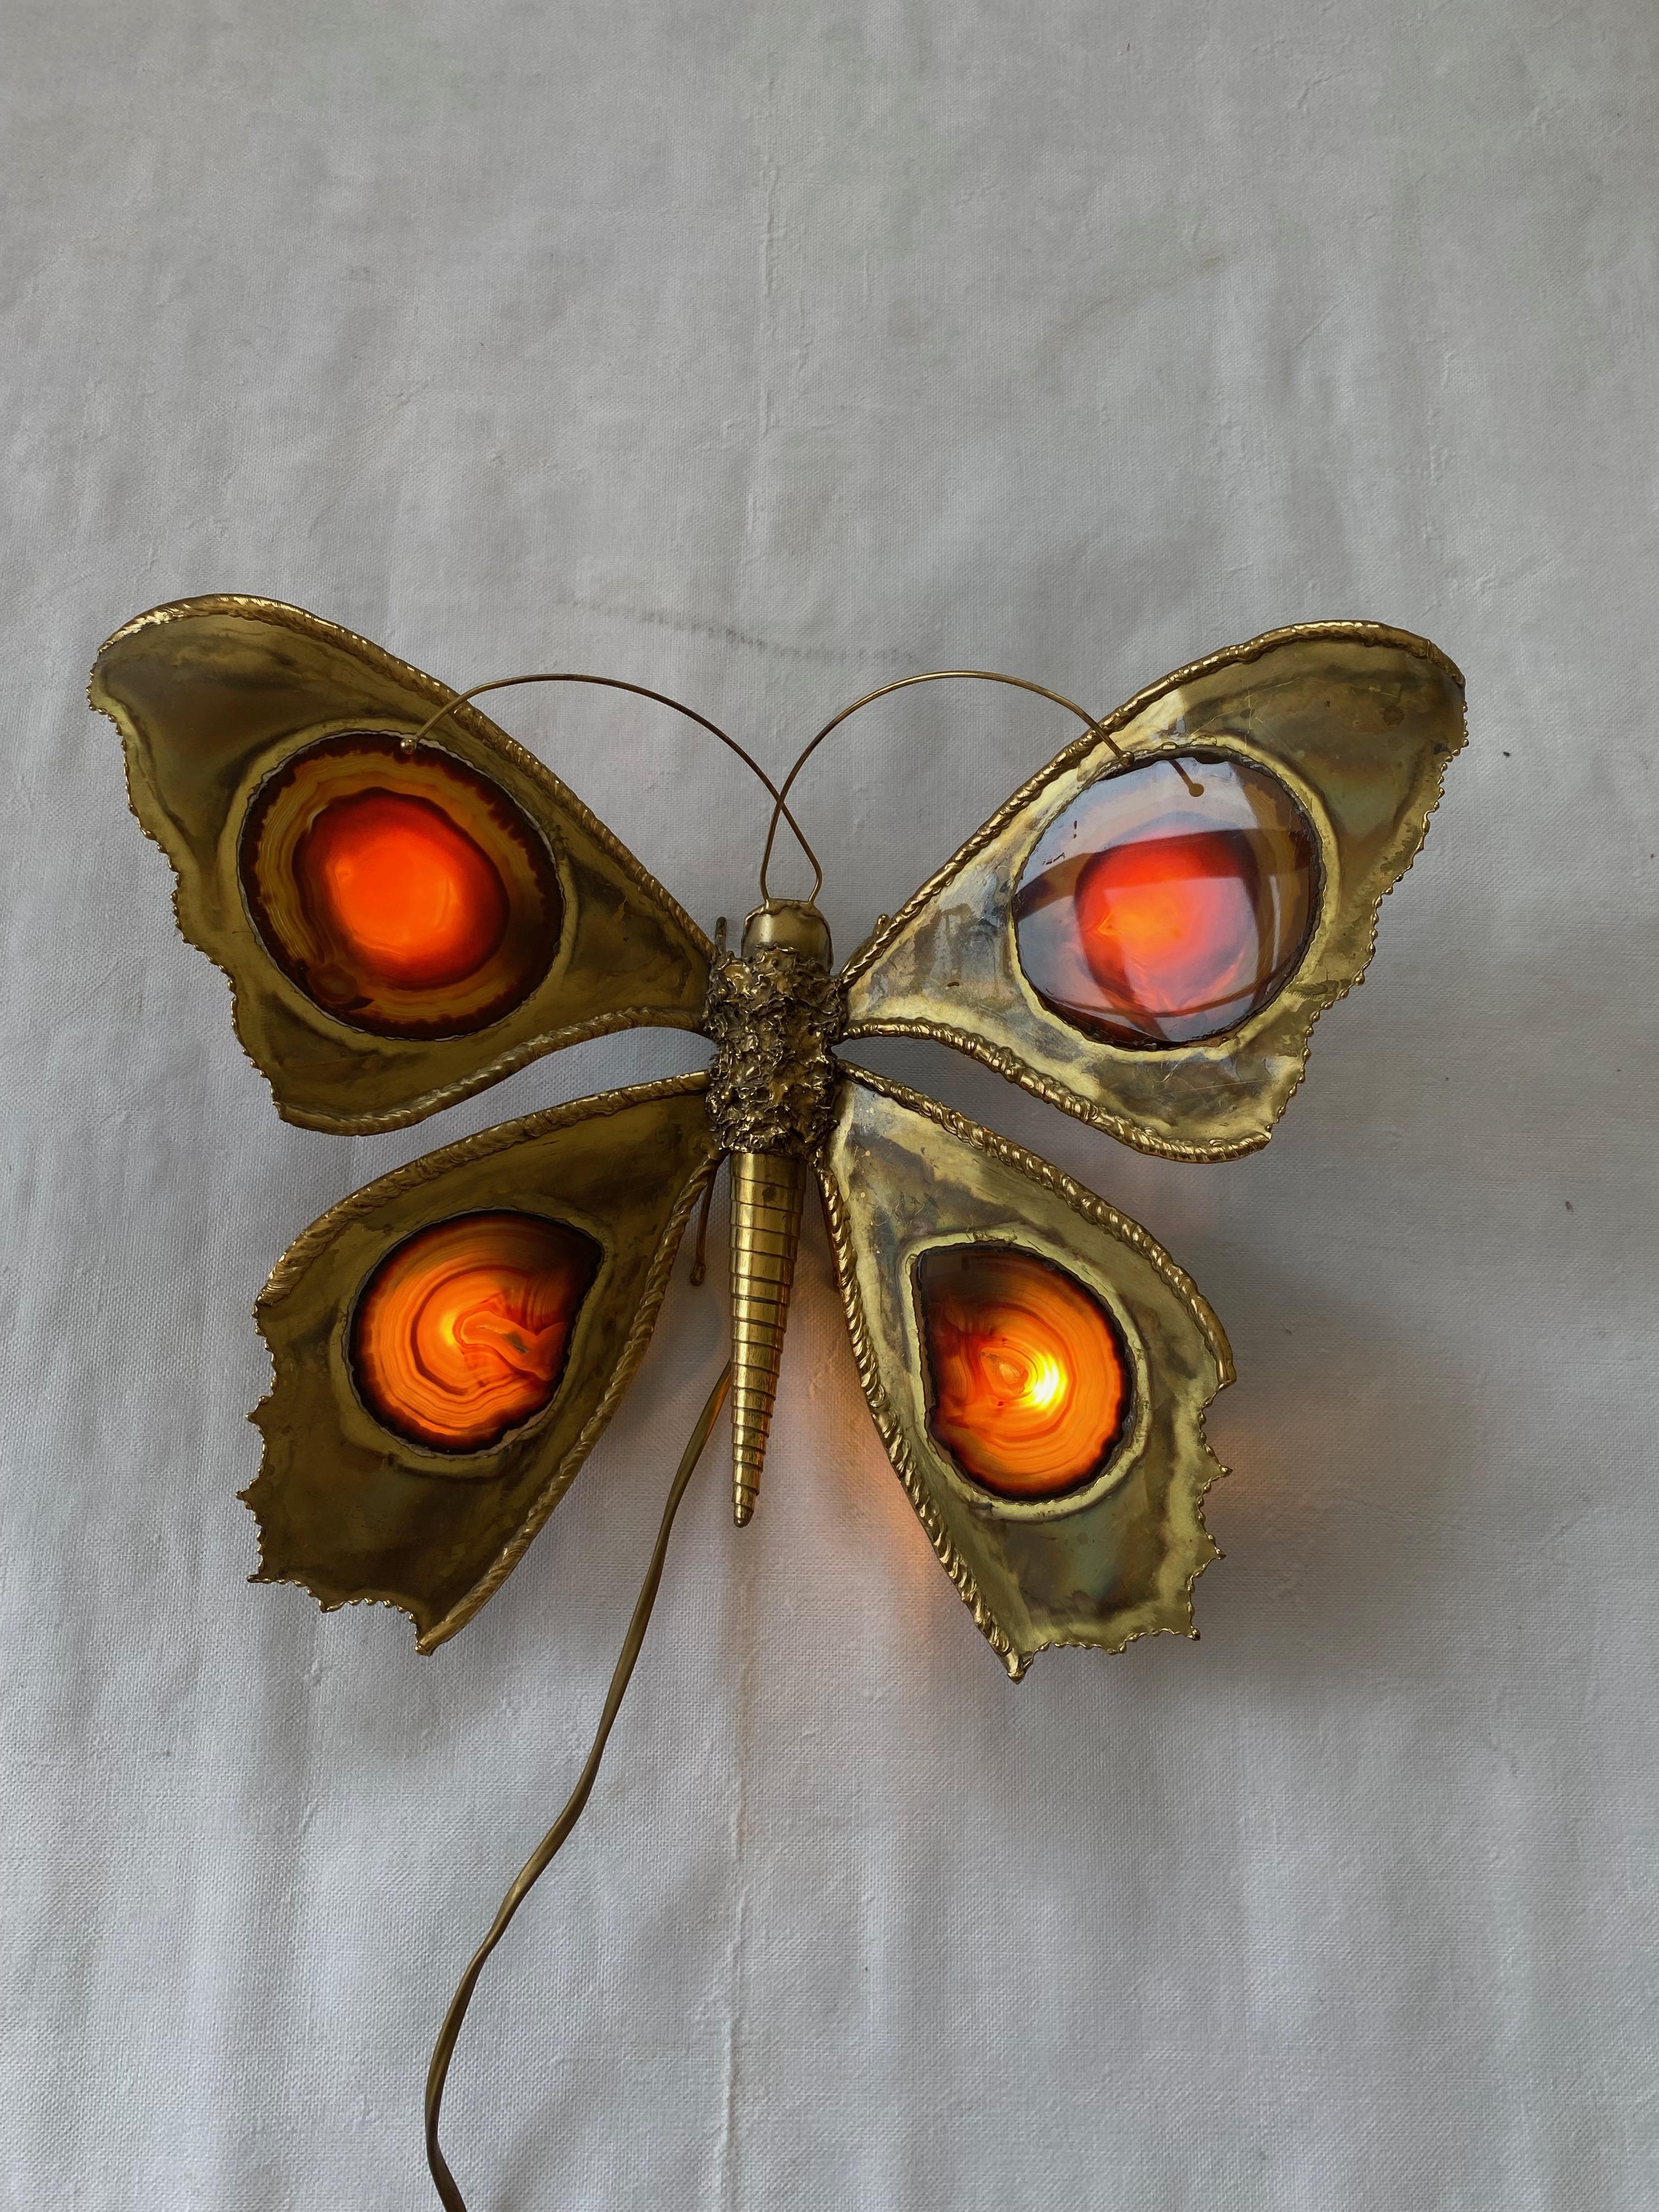 Applique papillon en bronze ou laiton, 4 ampoules, ailes en agate, état d'usage, vers 1970.
Origine France
Hauteur des ailes : 33 cm
Largeur : 40cm
Hauteur : 33cm
Profondeur : 13cm